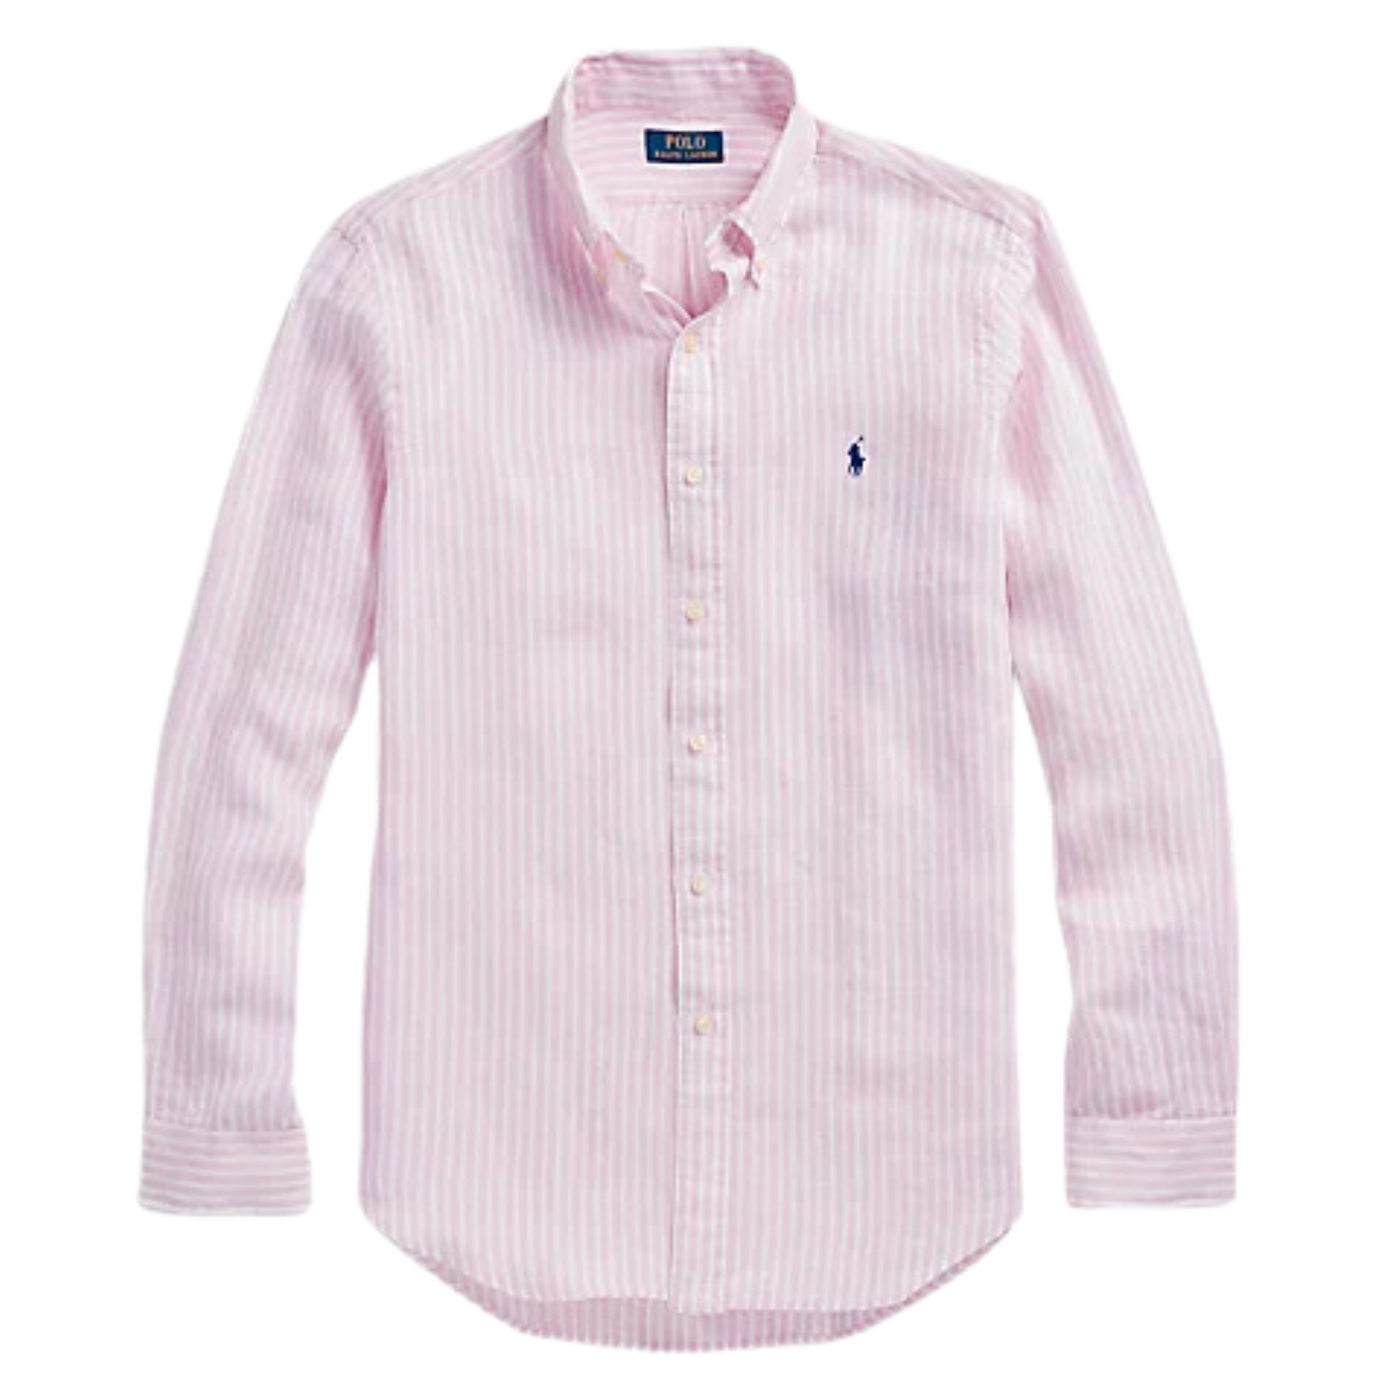 Ralph Lauren Linen Shirt in Striped Pink